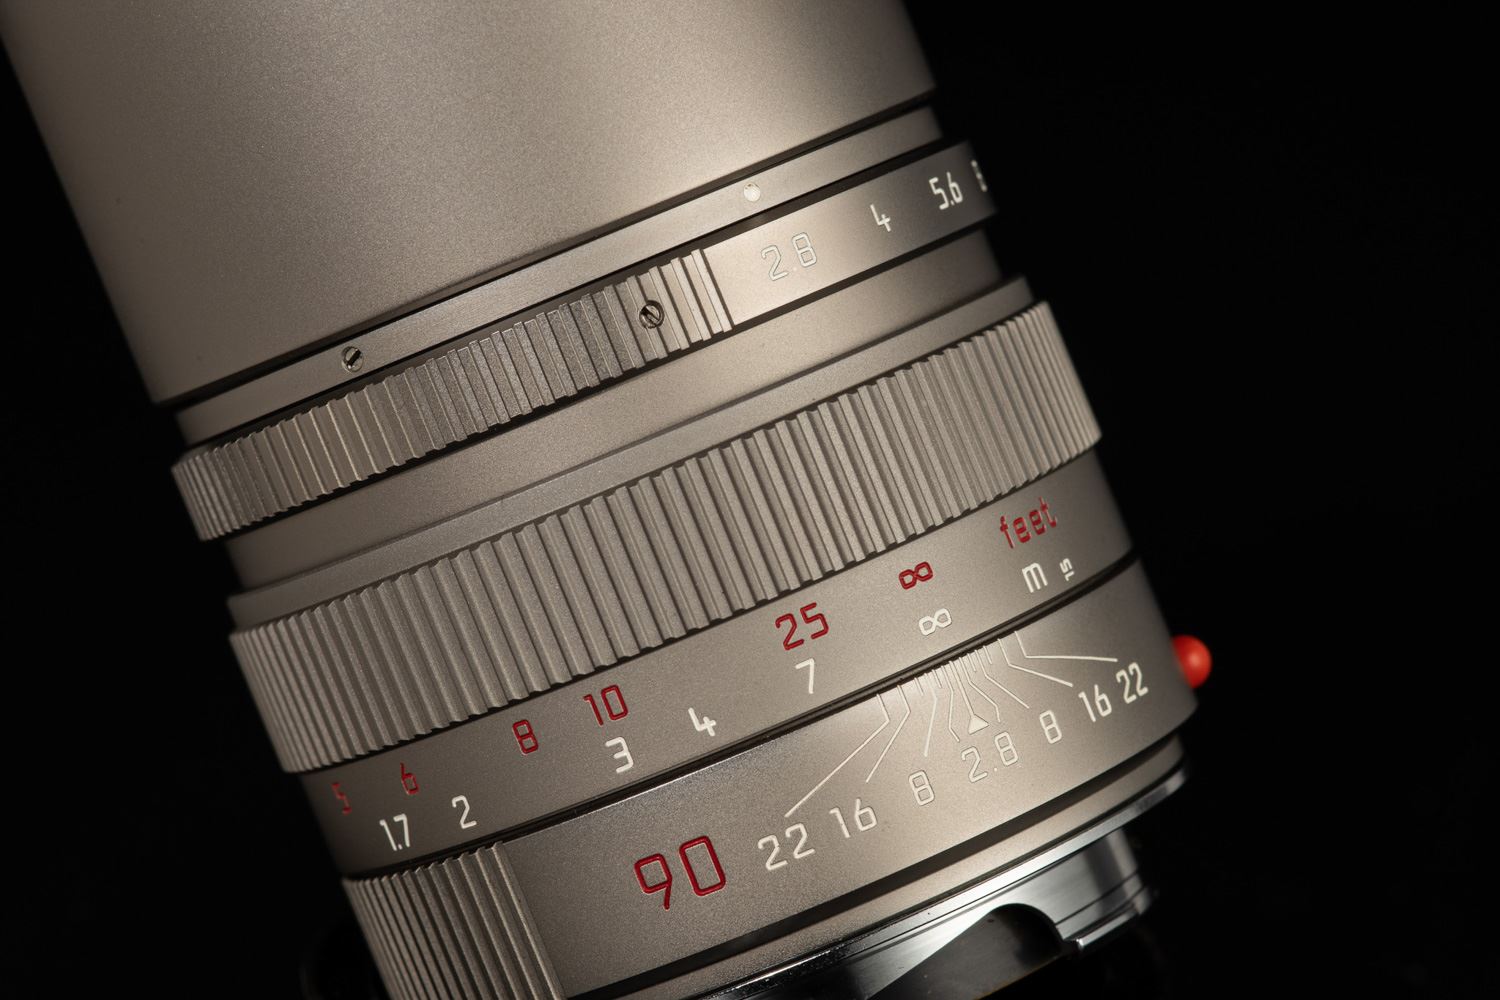 Picture of Leica Elmarit-M 90mm f/2.8 Titanium